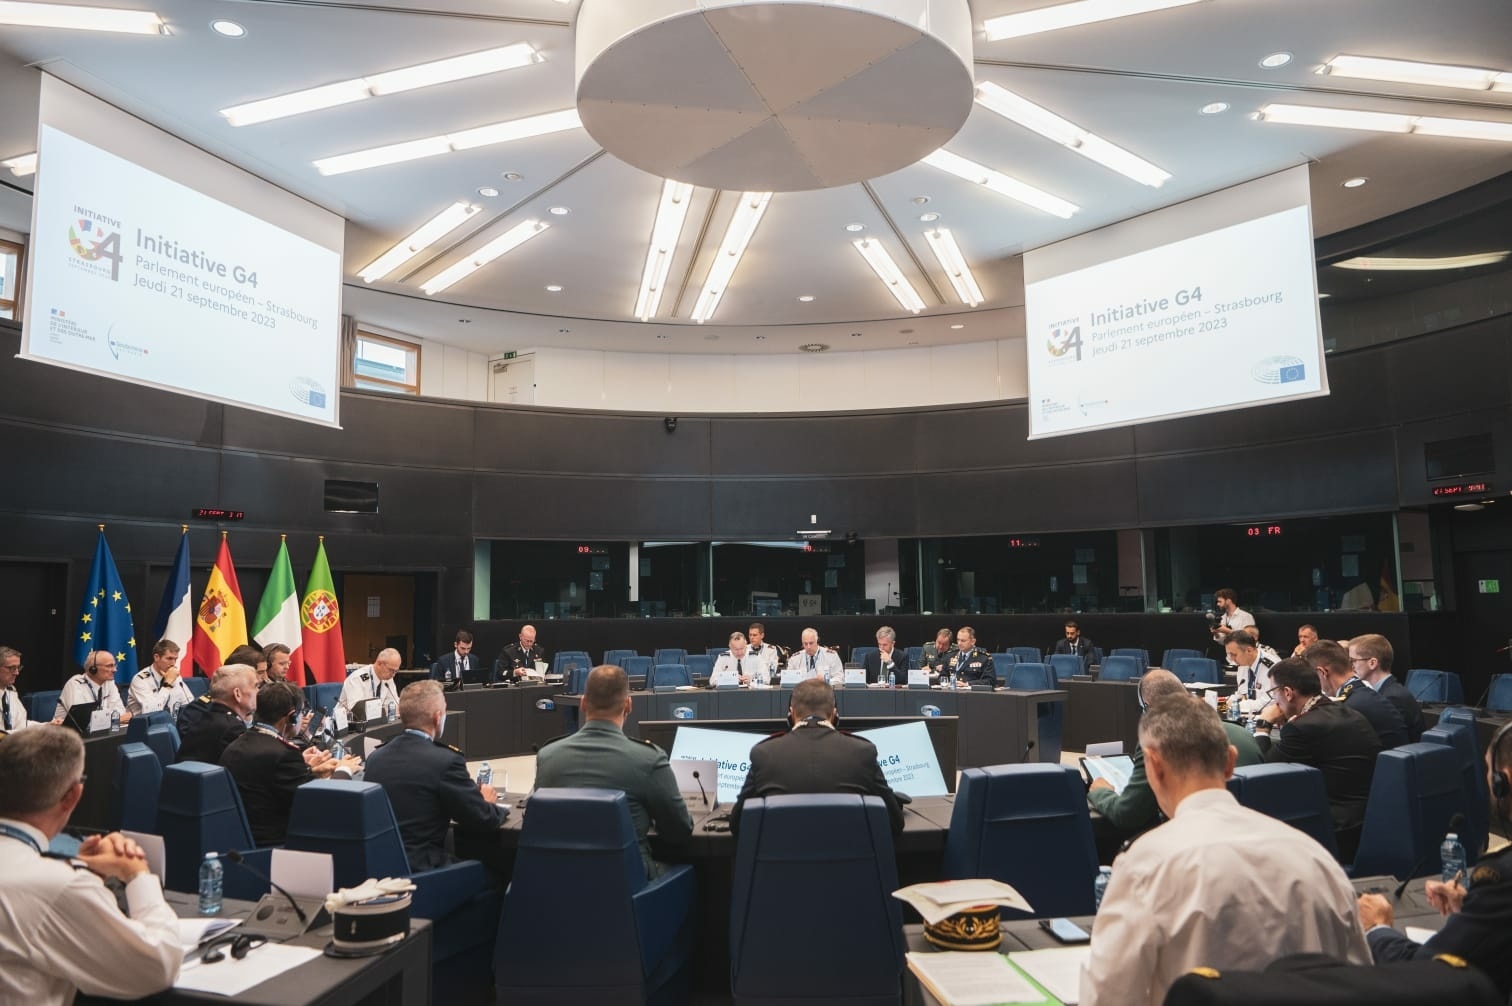 Cooperação internacional: a gendarmaria organiza a terceira cimeira da “Iniciativa G4” em Estrasburgo